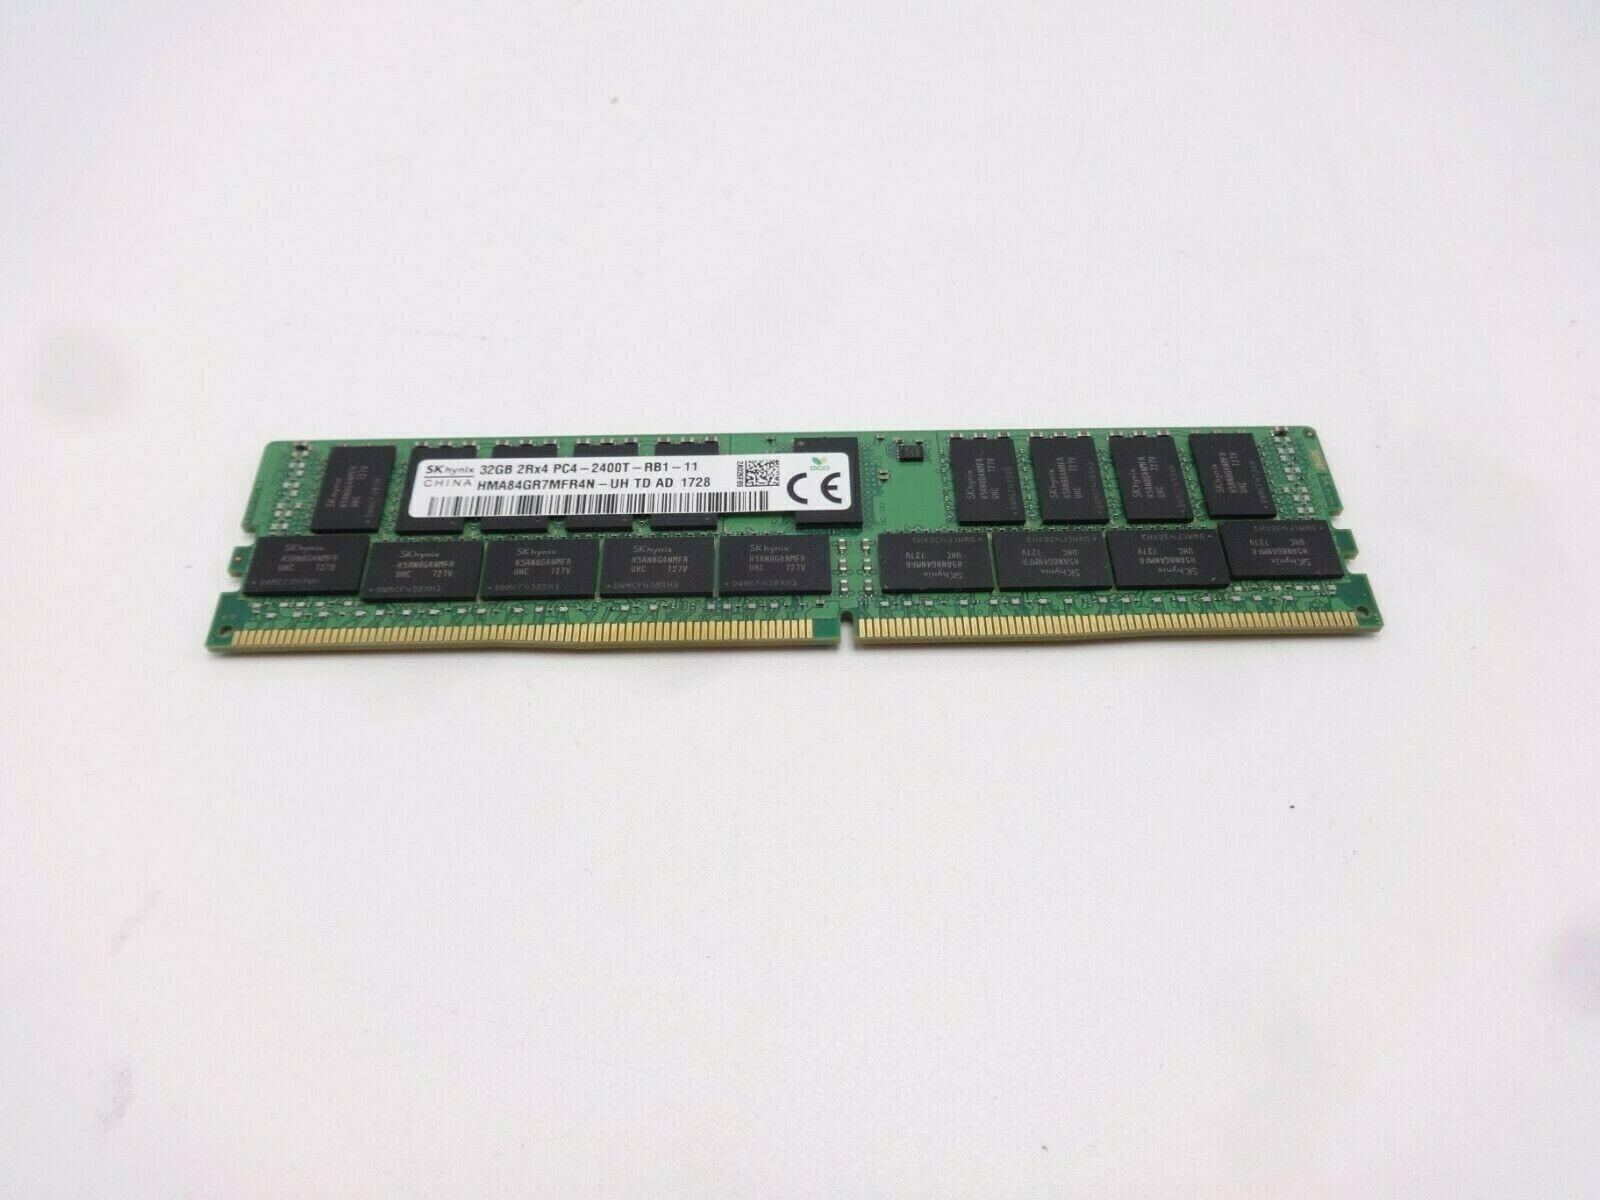 Hynix HMA84GR7MFR4N-UH 32GB 2Rx4 PC4-2400T 19200T DDR4 Server Memory